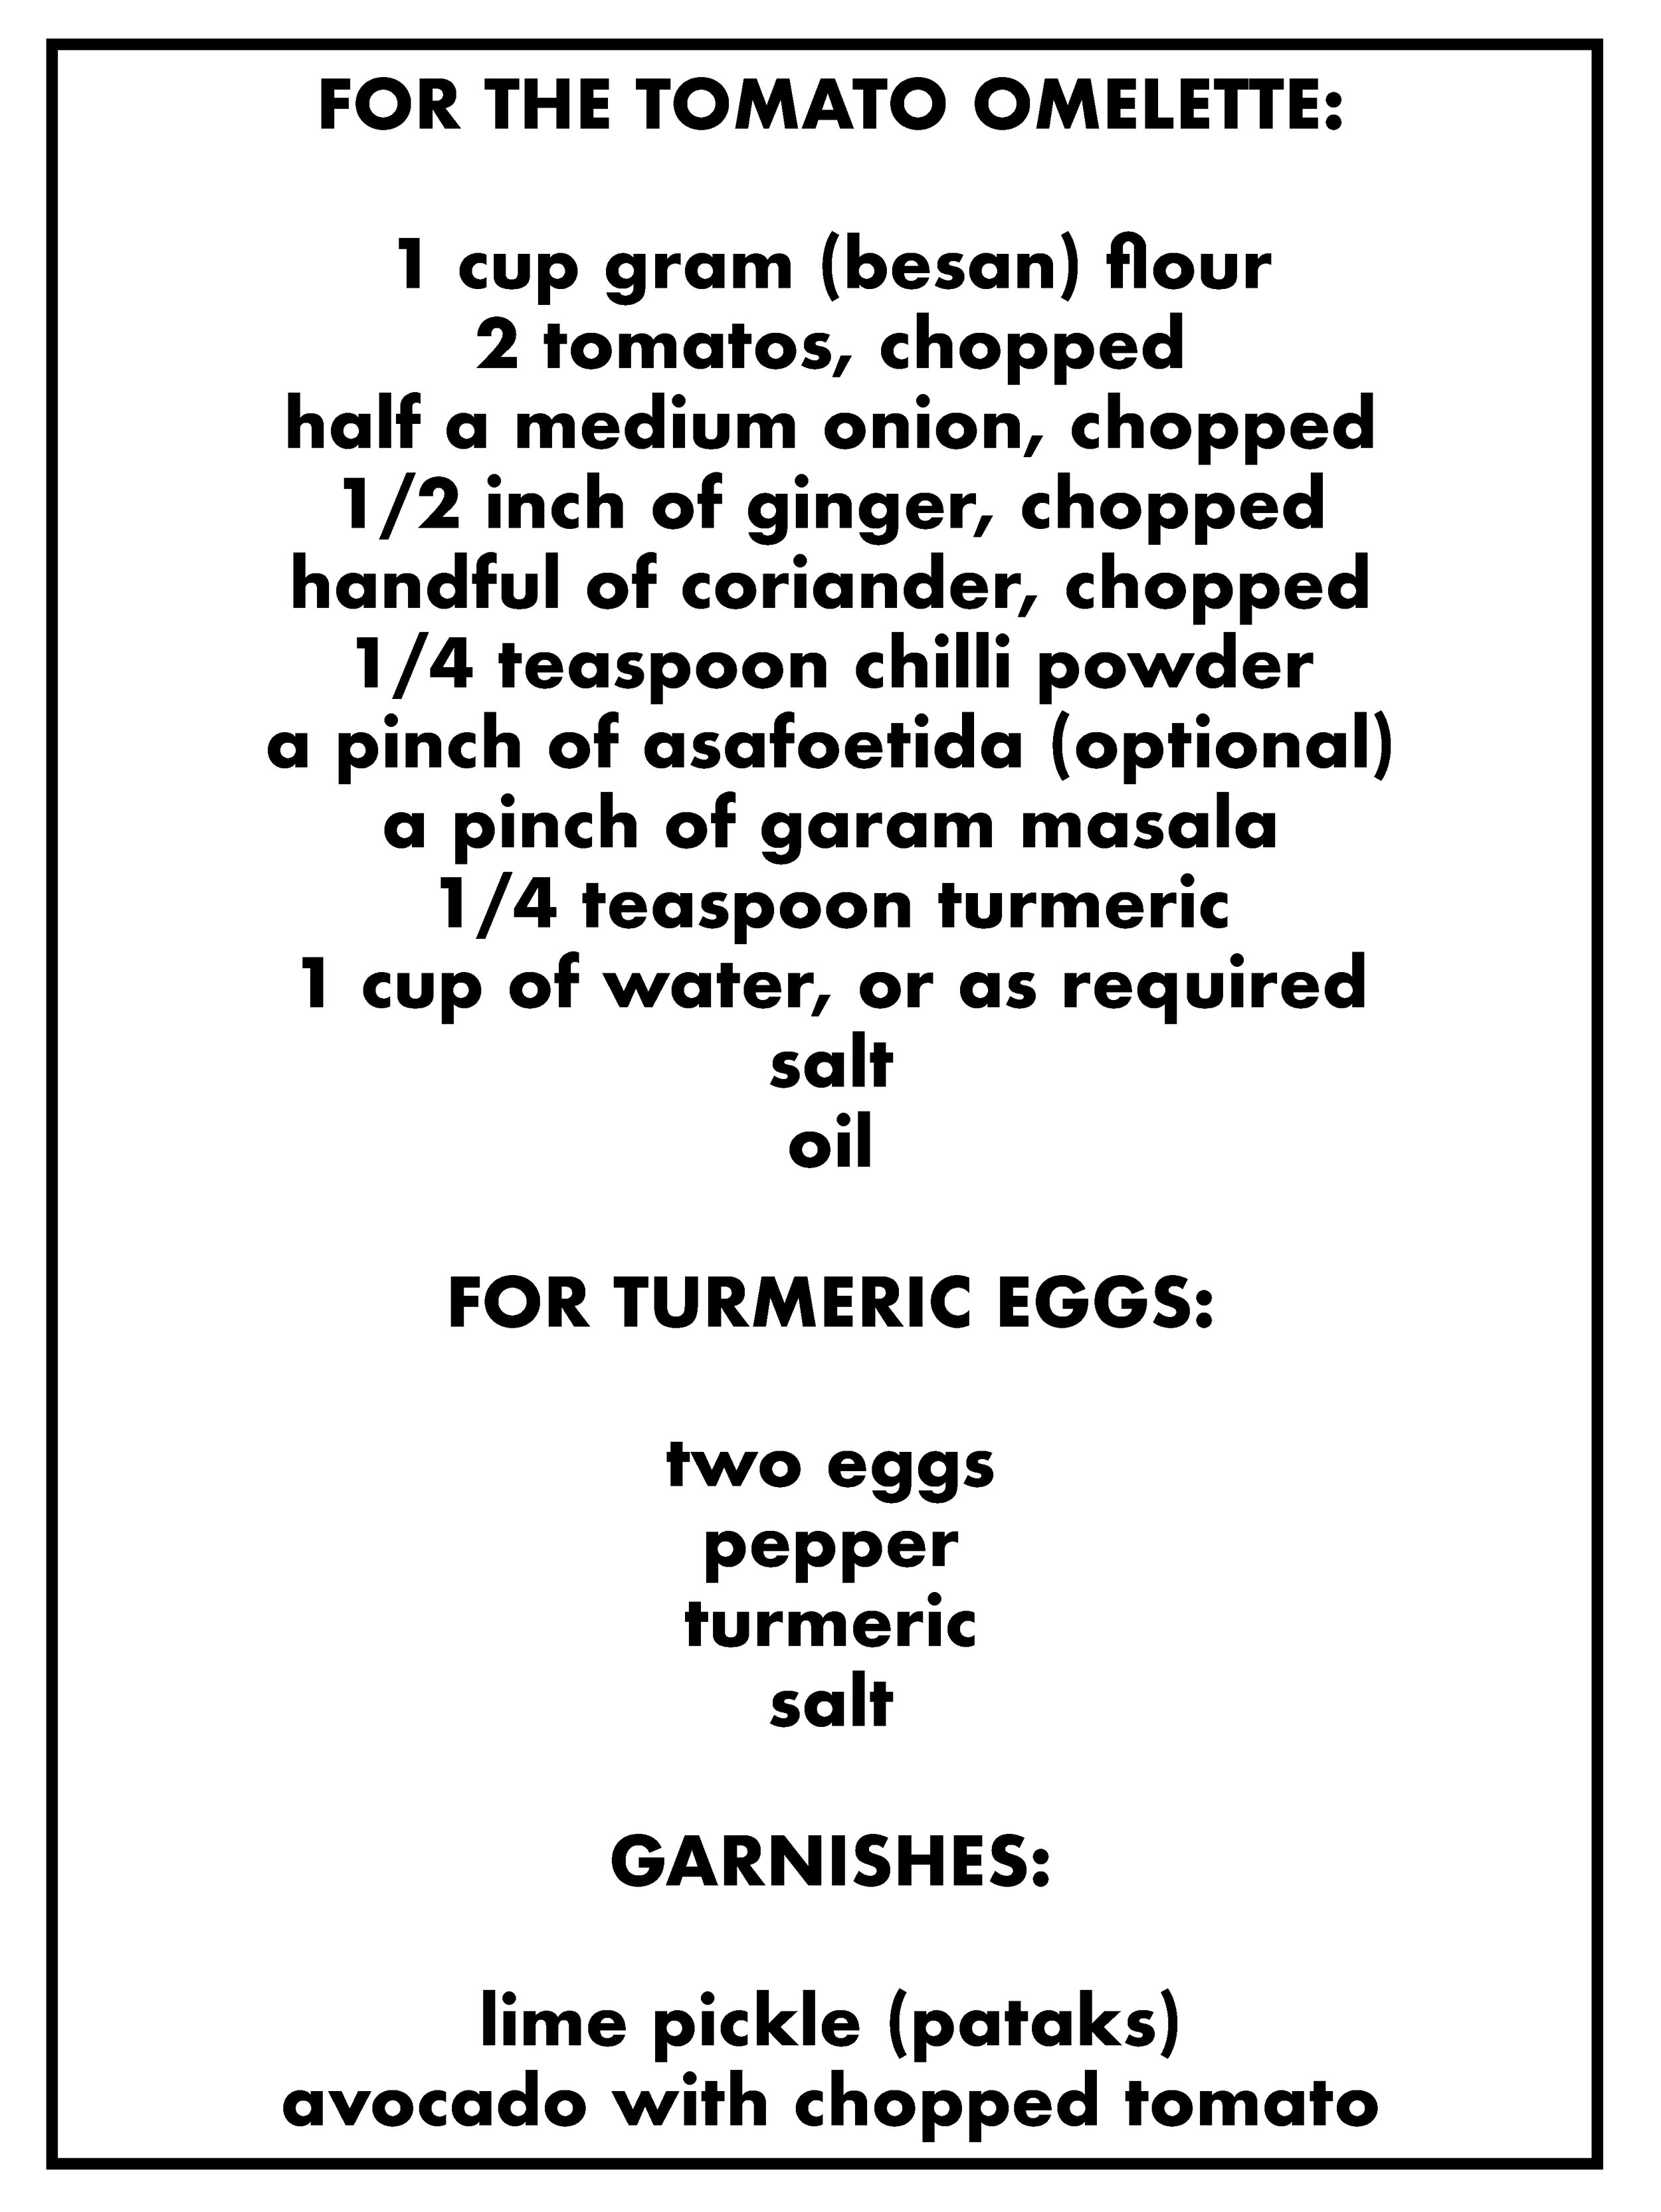 tomato omelette and eggs.jpg